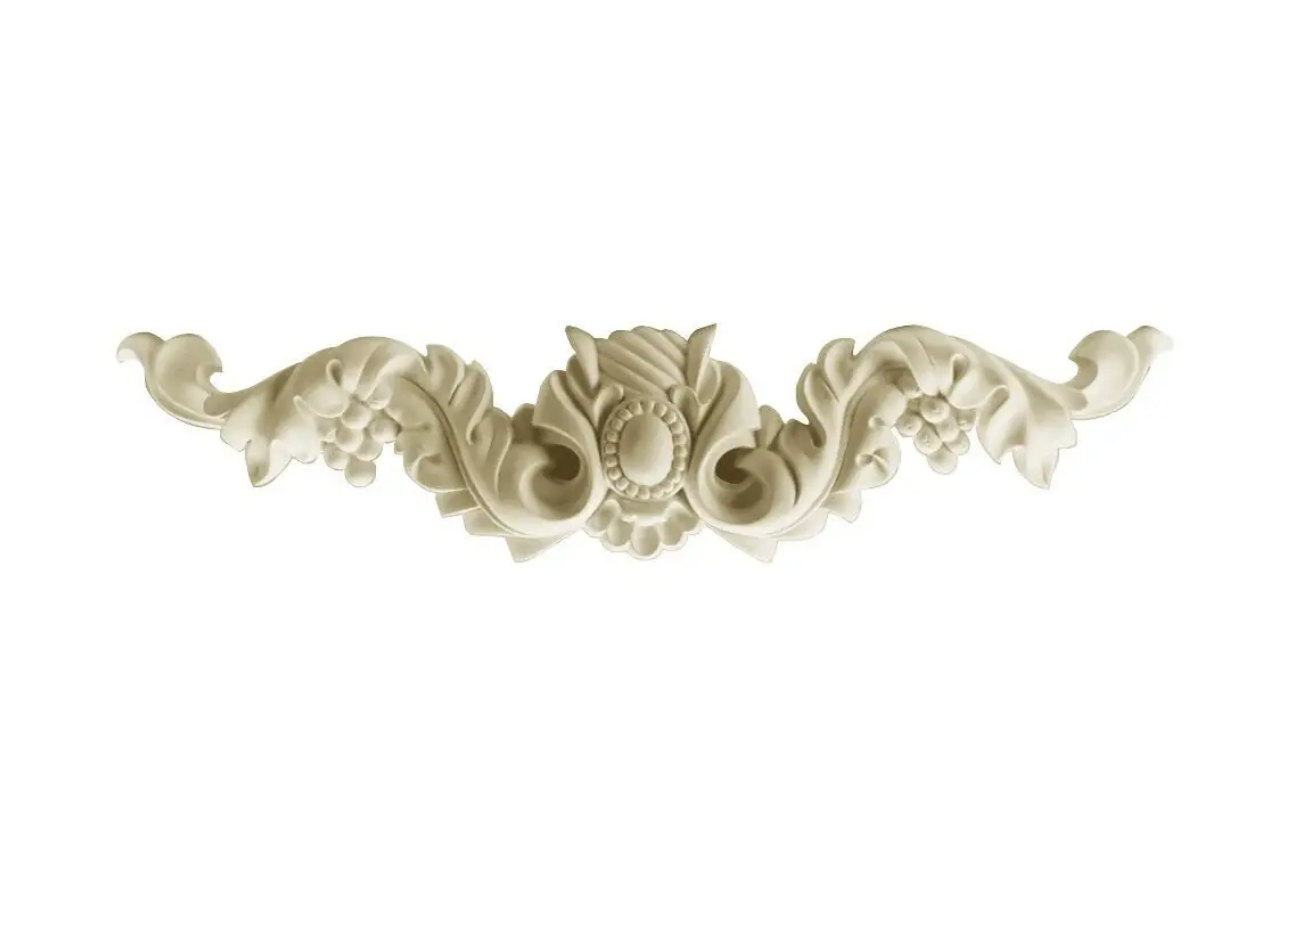 Декоративный орнамент (панно) Gaudi Decor W 8025